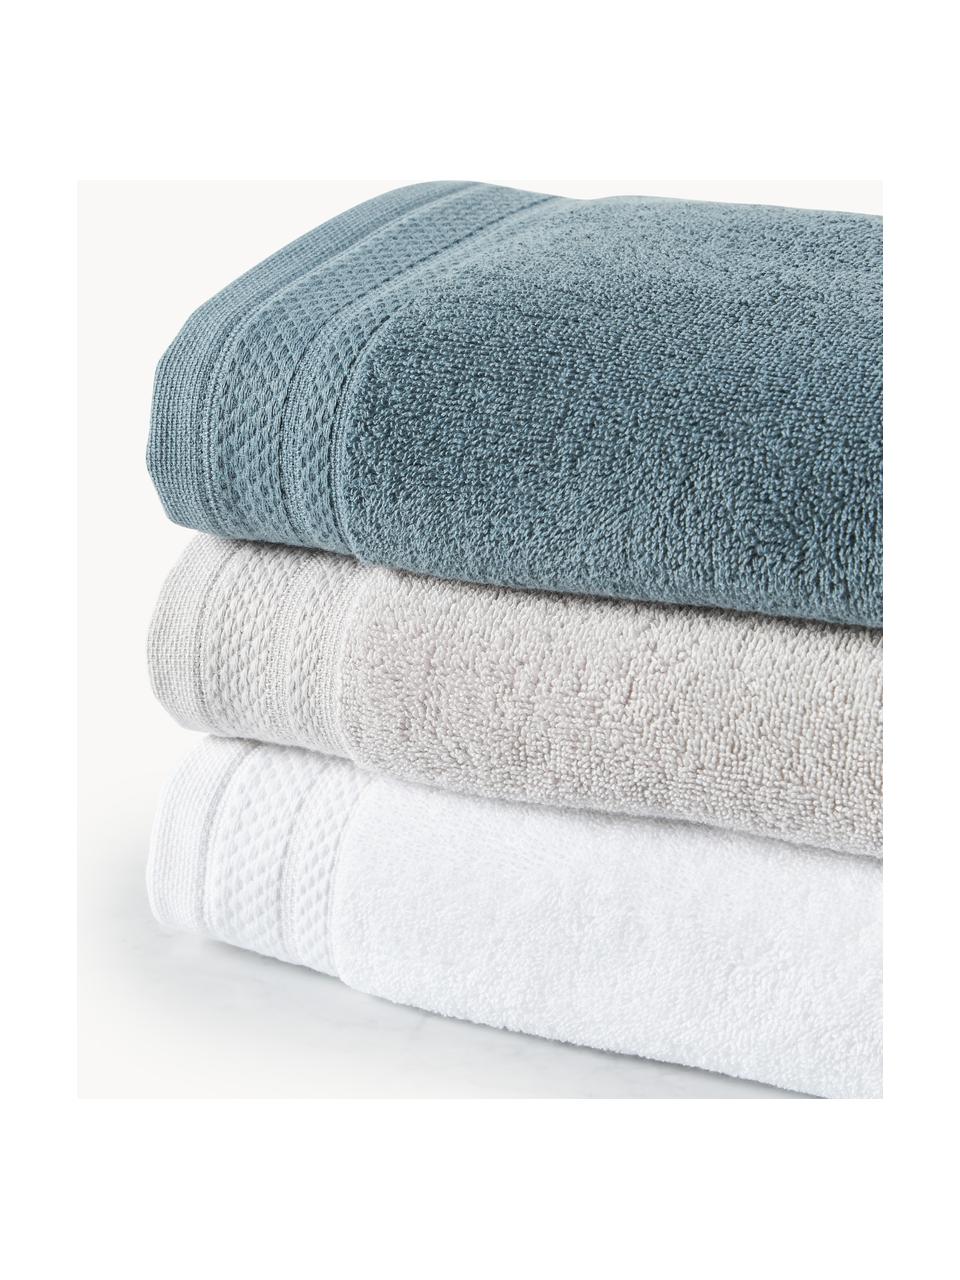 Handtuch-Set Premium aus Bio-Baumwolle, verschiedene Setgrößen, 100 % Bio-Baumwolle, GOTS-zertifiziert (von GCL International, GCL-300517)
Schwere Qualität, 600 g/m², Weiß, 4er-Set (Handtuch & Duschtuch)